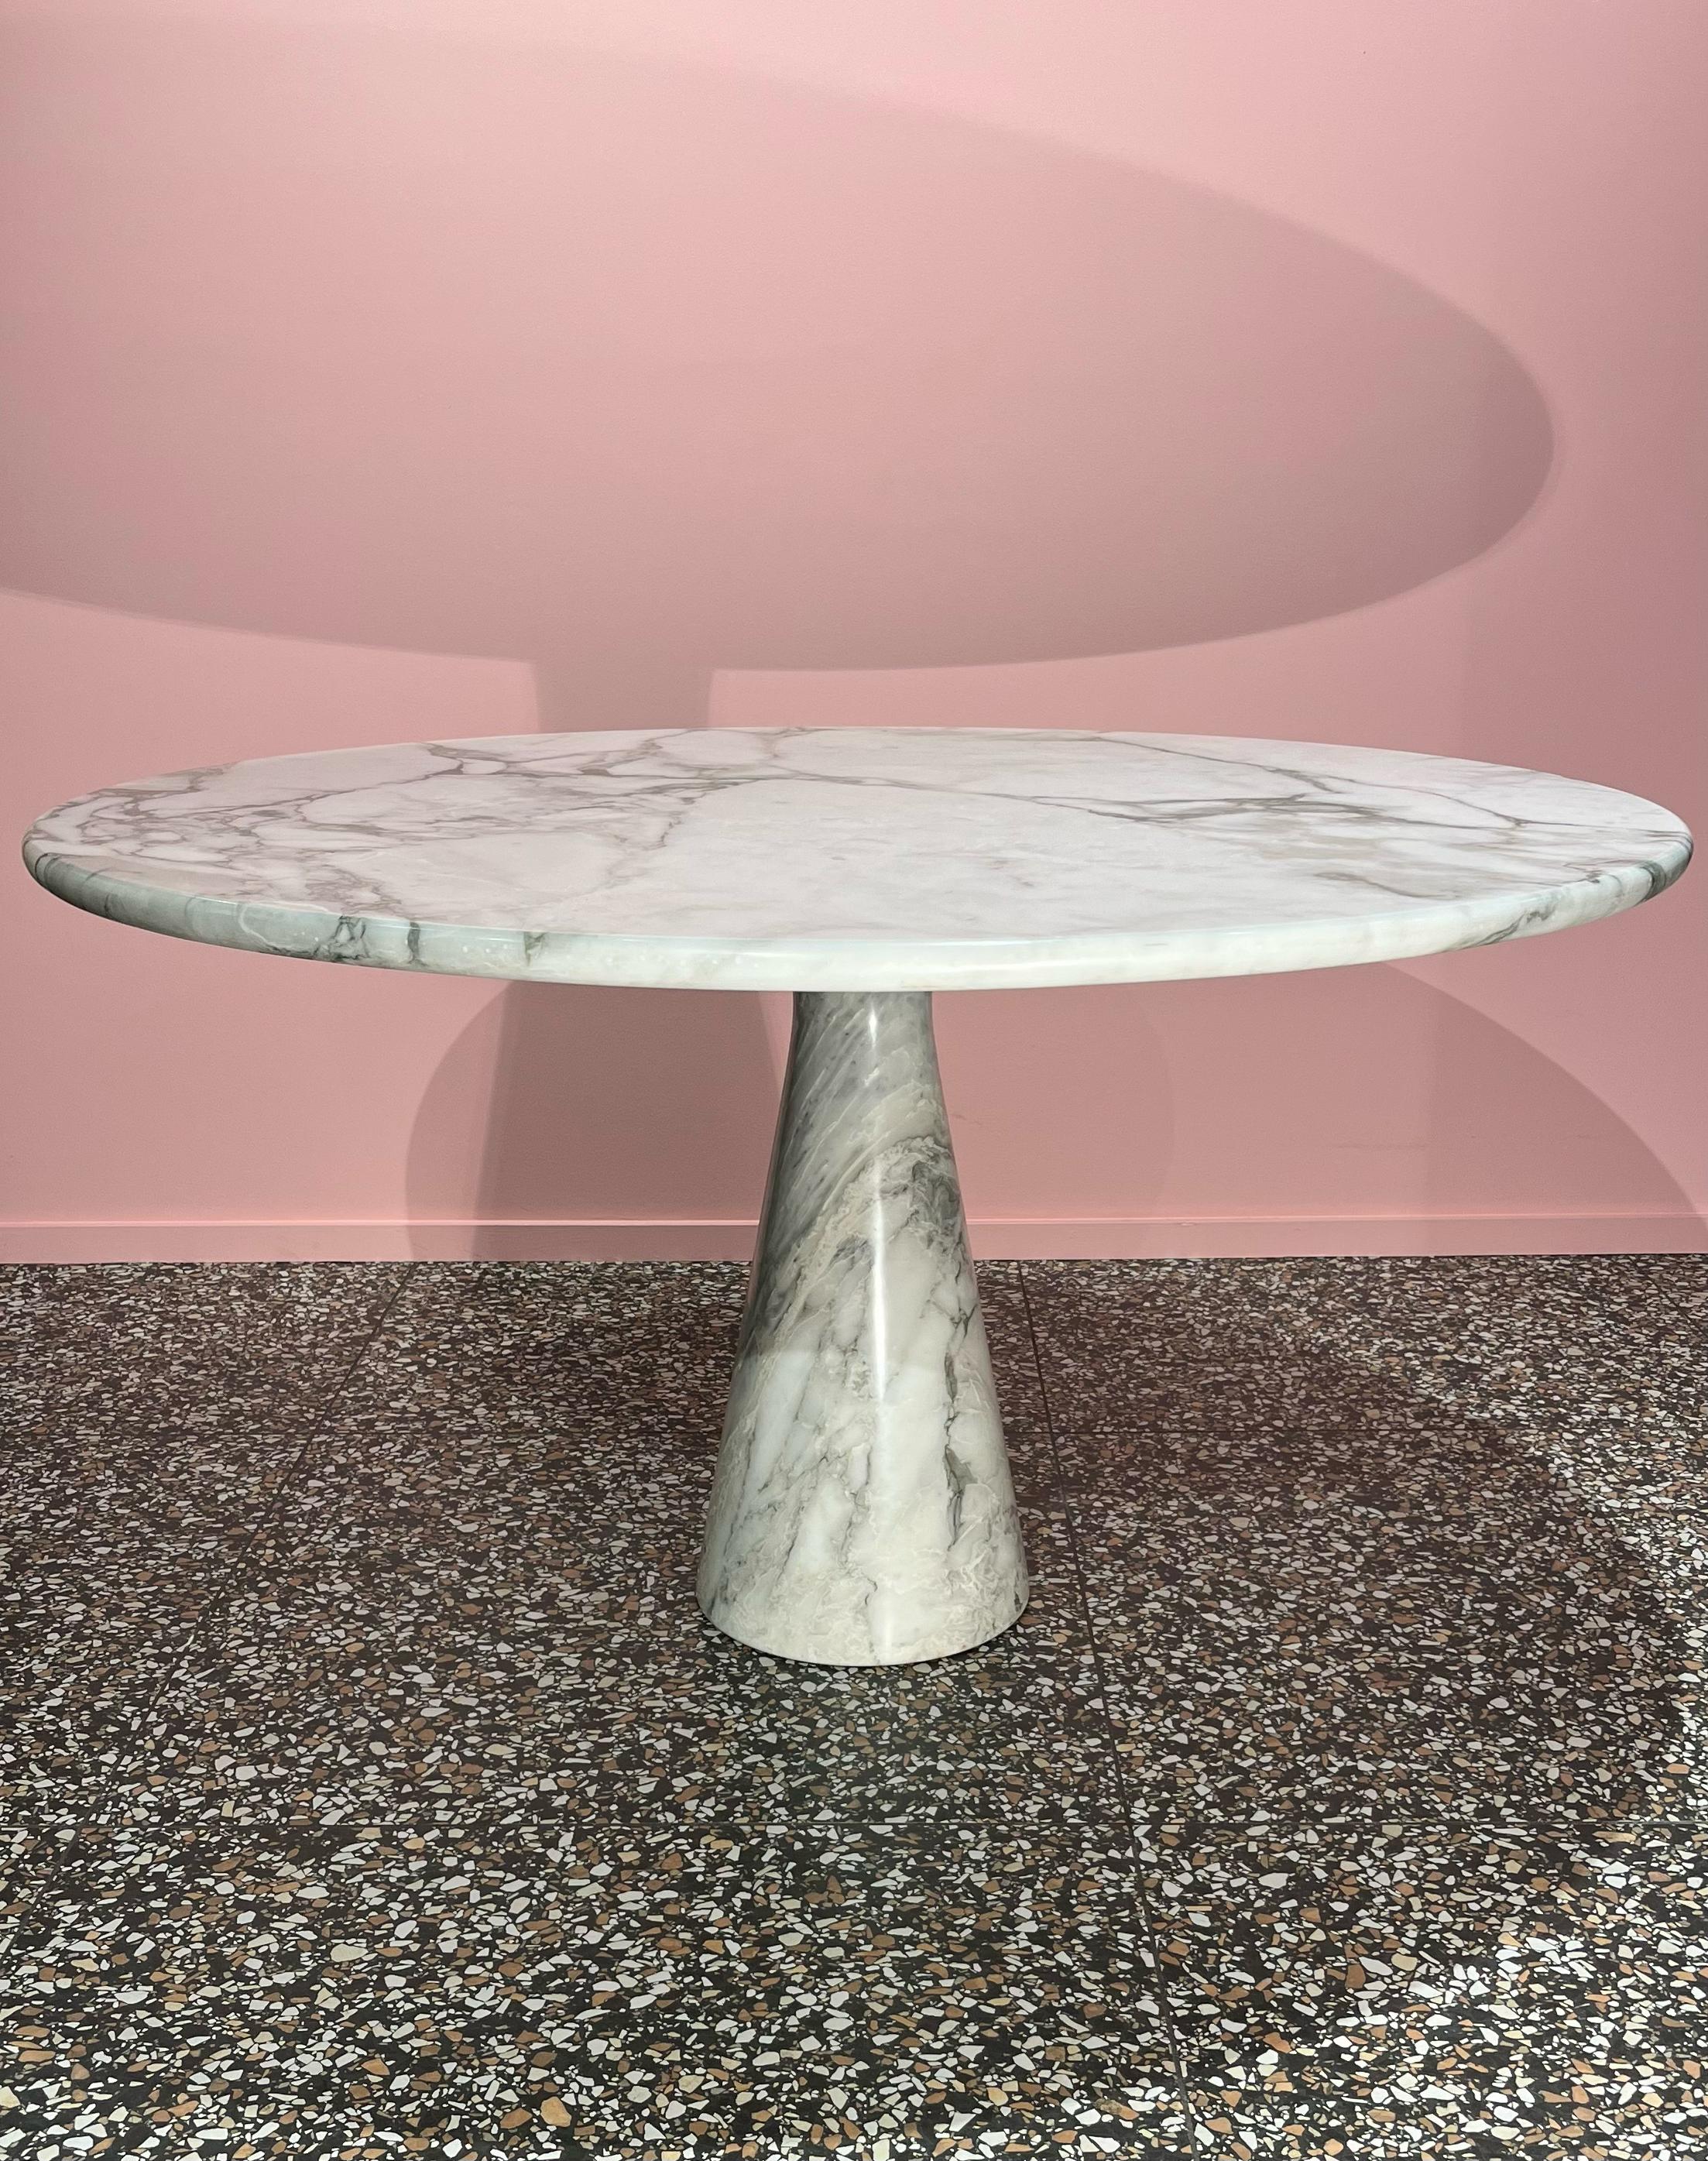 Die klare und elegante Form des Tisches M1 T70 basiert auf dem Wunsch des Architekten Angelo Mangiarotti, einen eindrucksvollen Tisch aus hochwertigen Materialien ohne sichtbare Fugen zu schaffen. Er wurde 1969 für Skipper entworfen und besteht